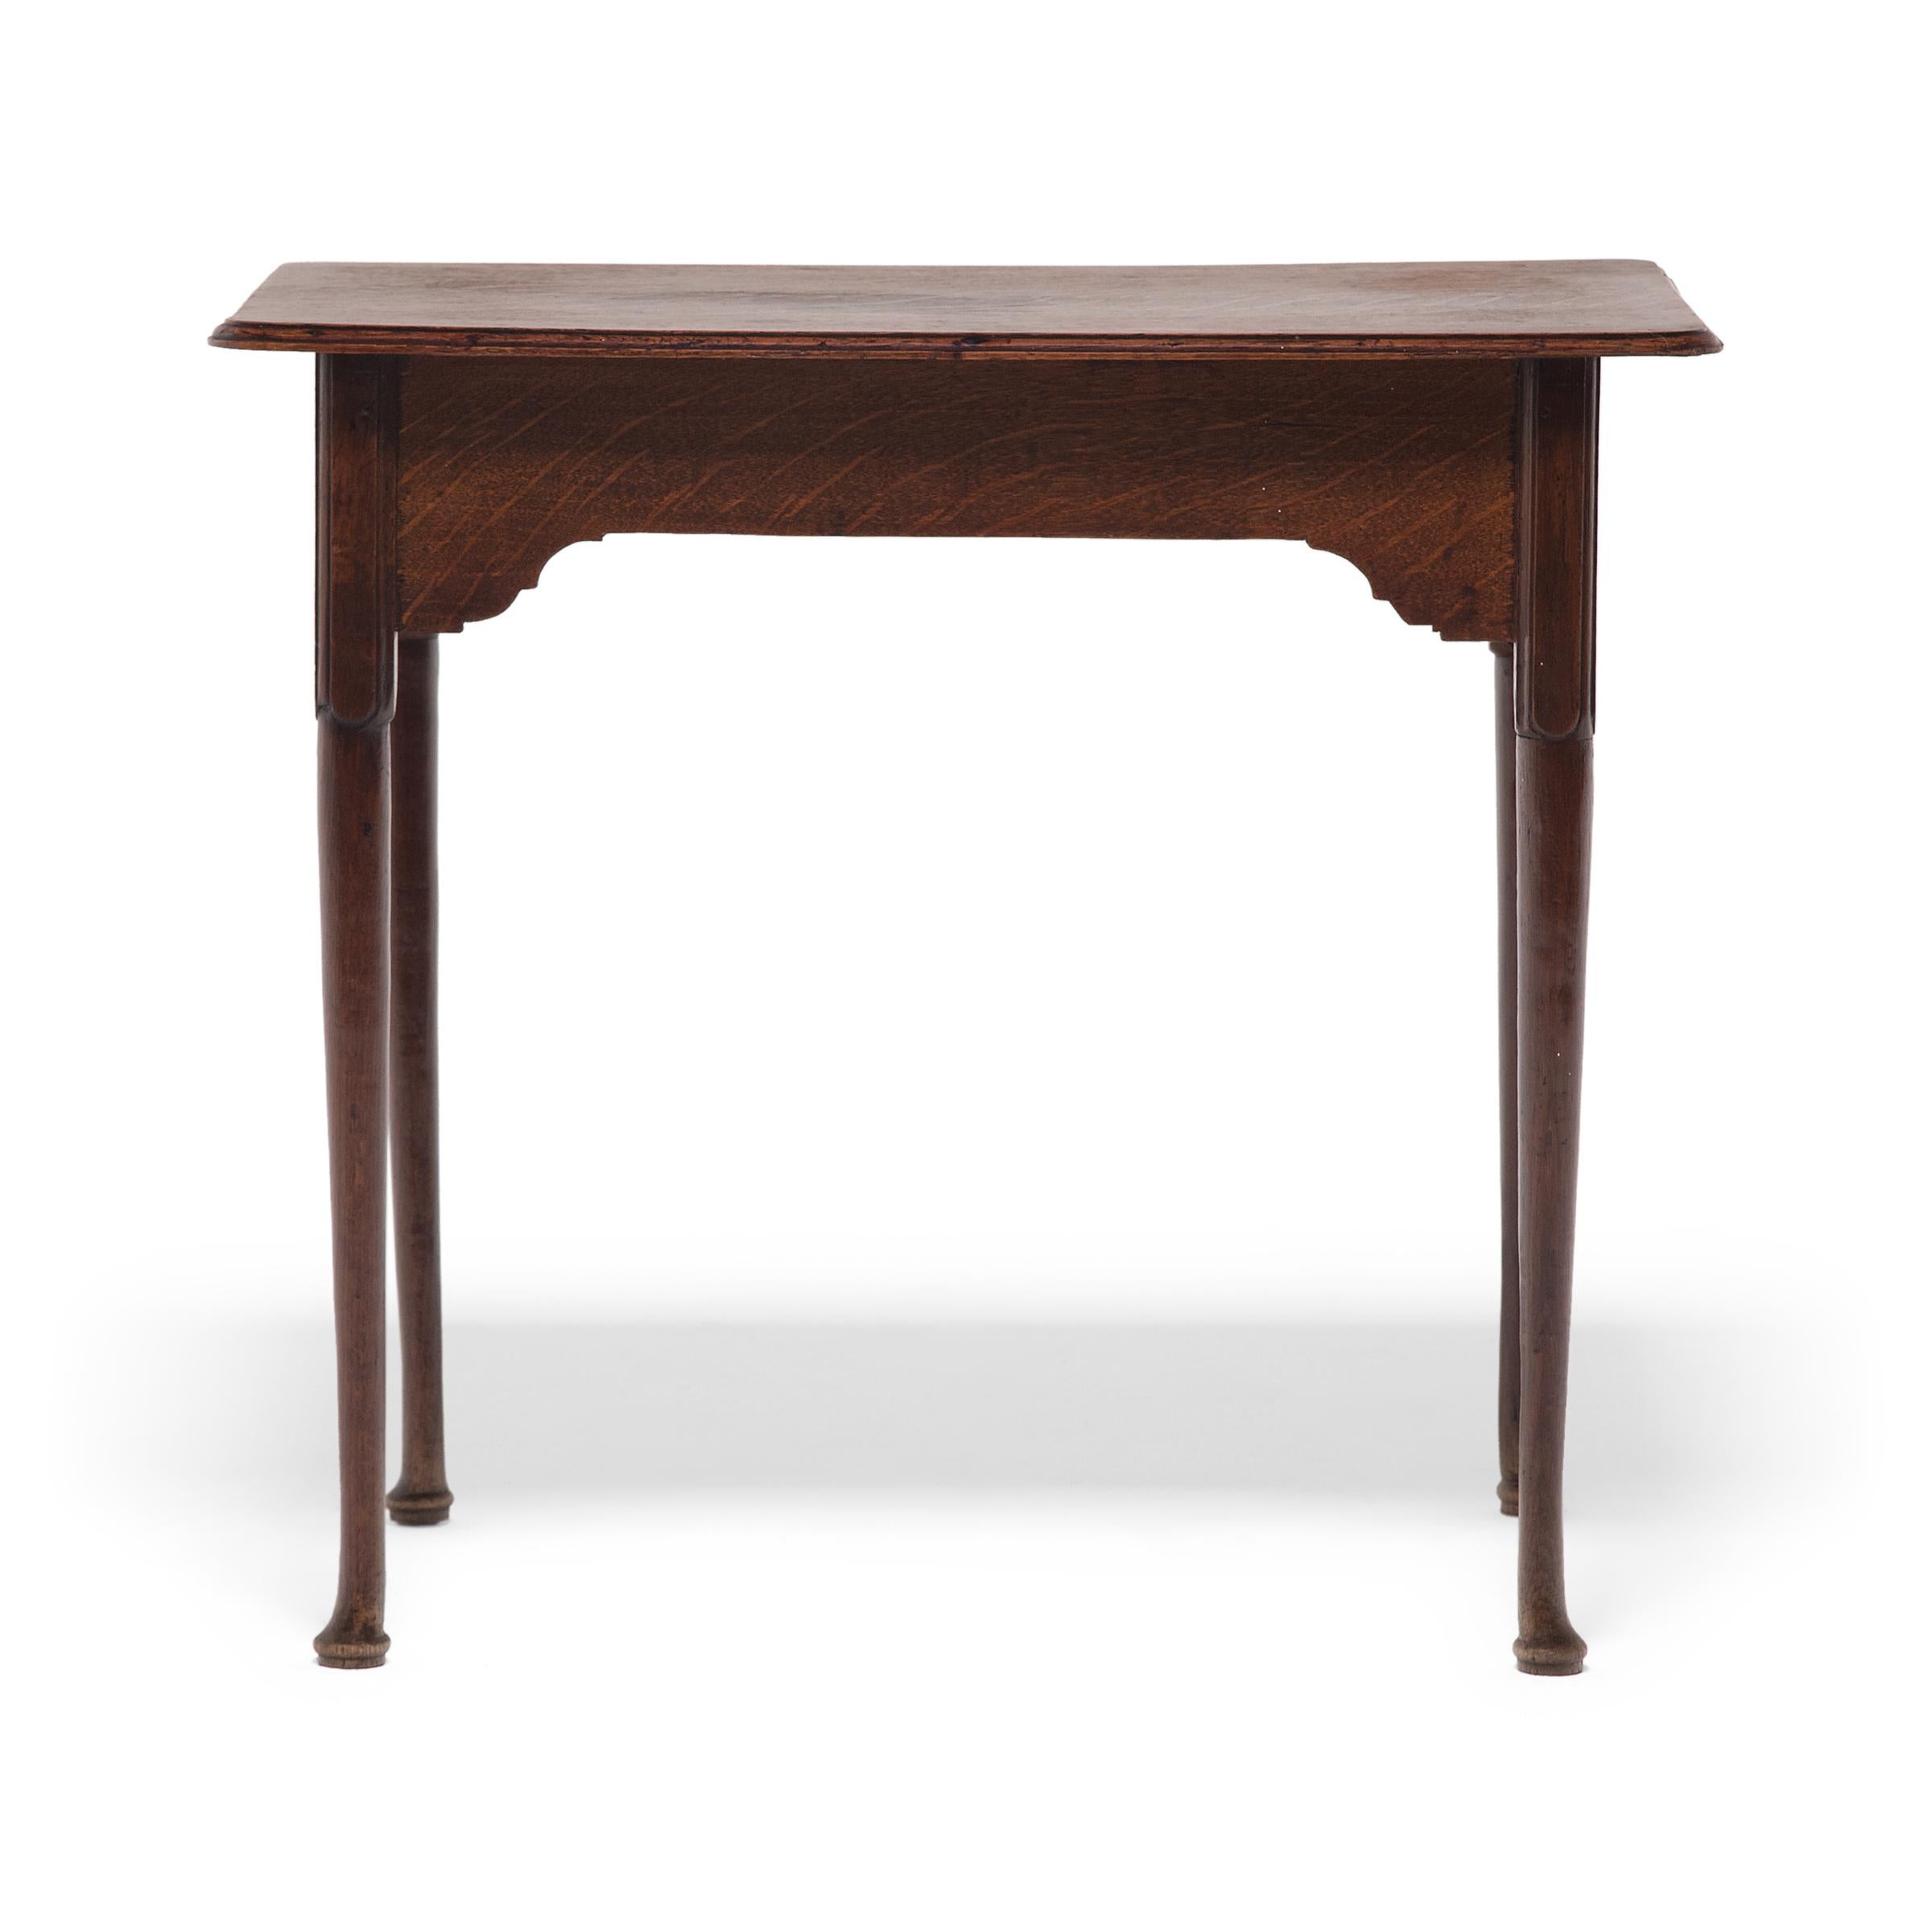 Dieser antike englische Beistelltisch wurde in der Mitte des 19. Jahrhunderts im Stil der Queen-Anne-Möbel gefertigt. Obwohl der Tisch ziemlich einfach ist, ist er wunderschön verarbeitet, mit einem leichten Design und subtilen geschnitzten Details